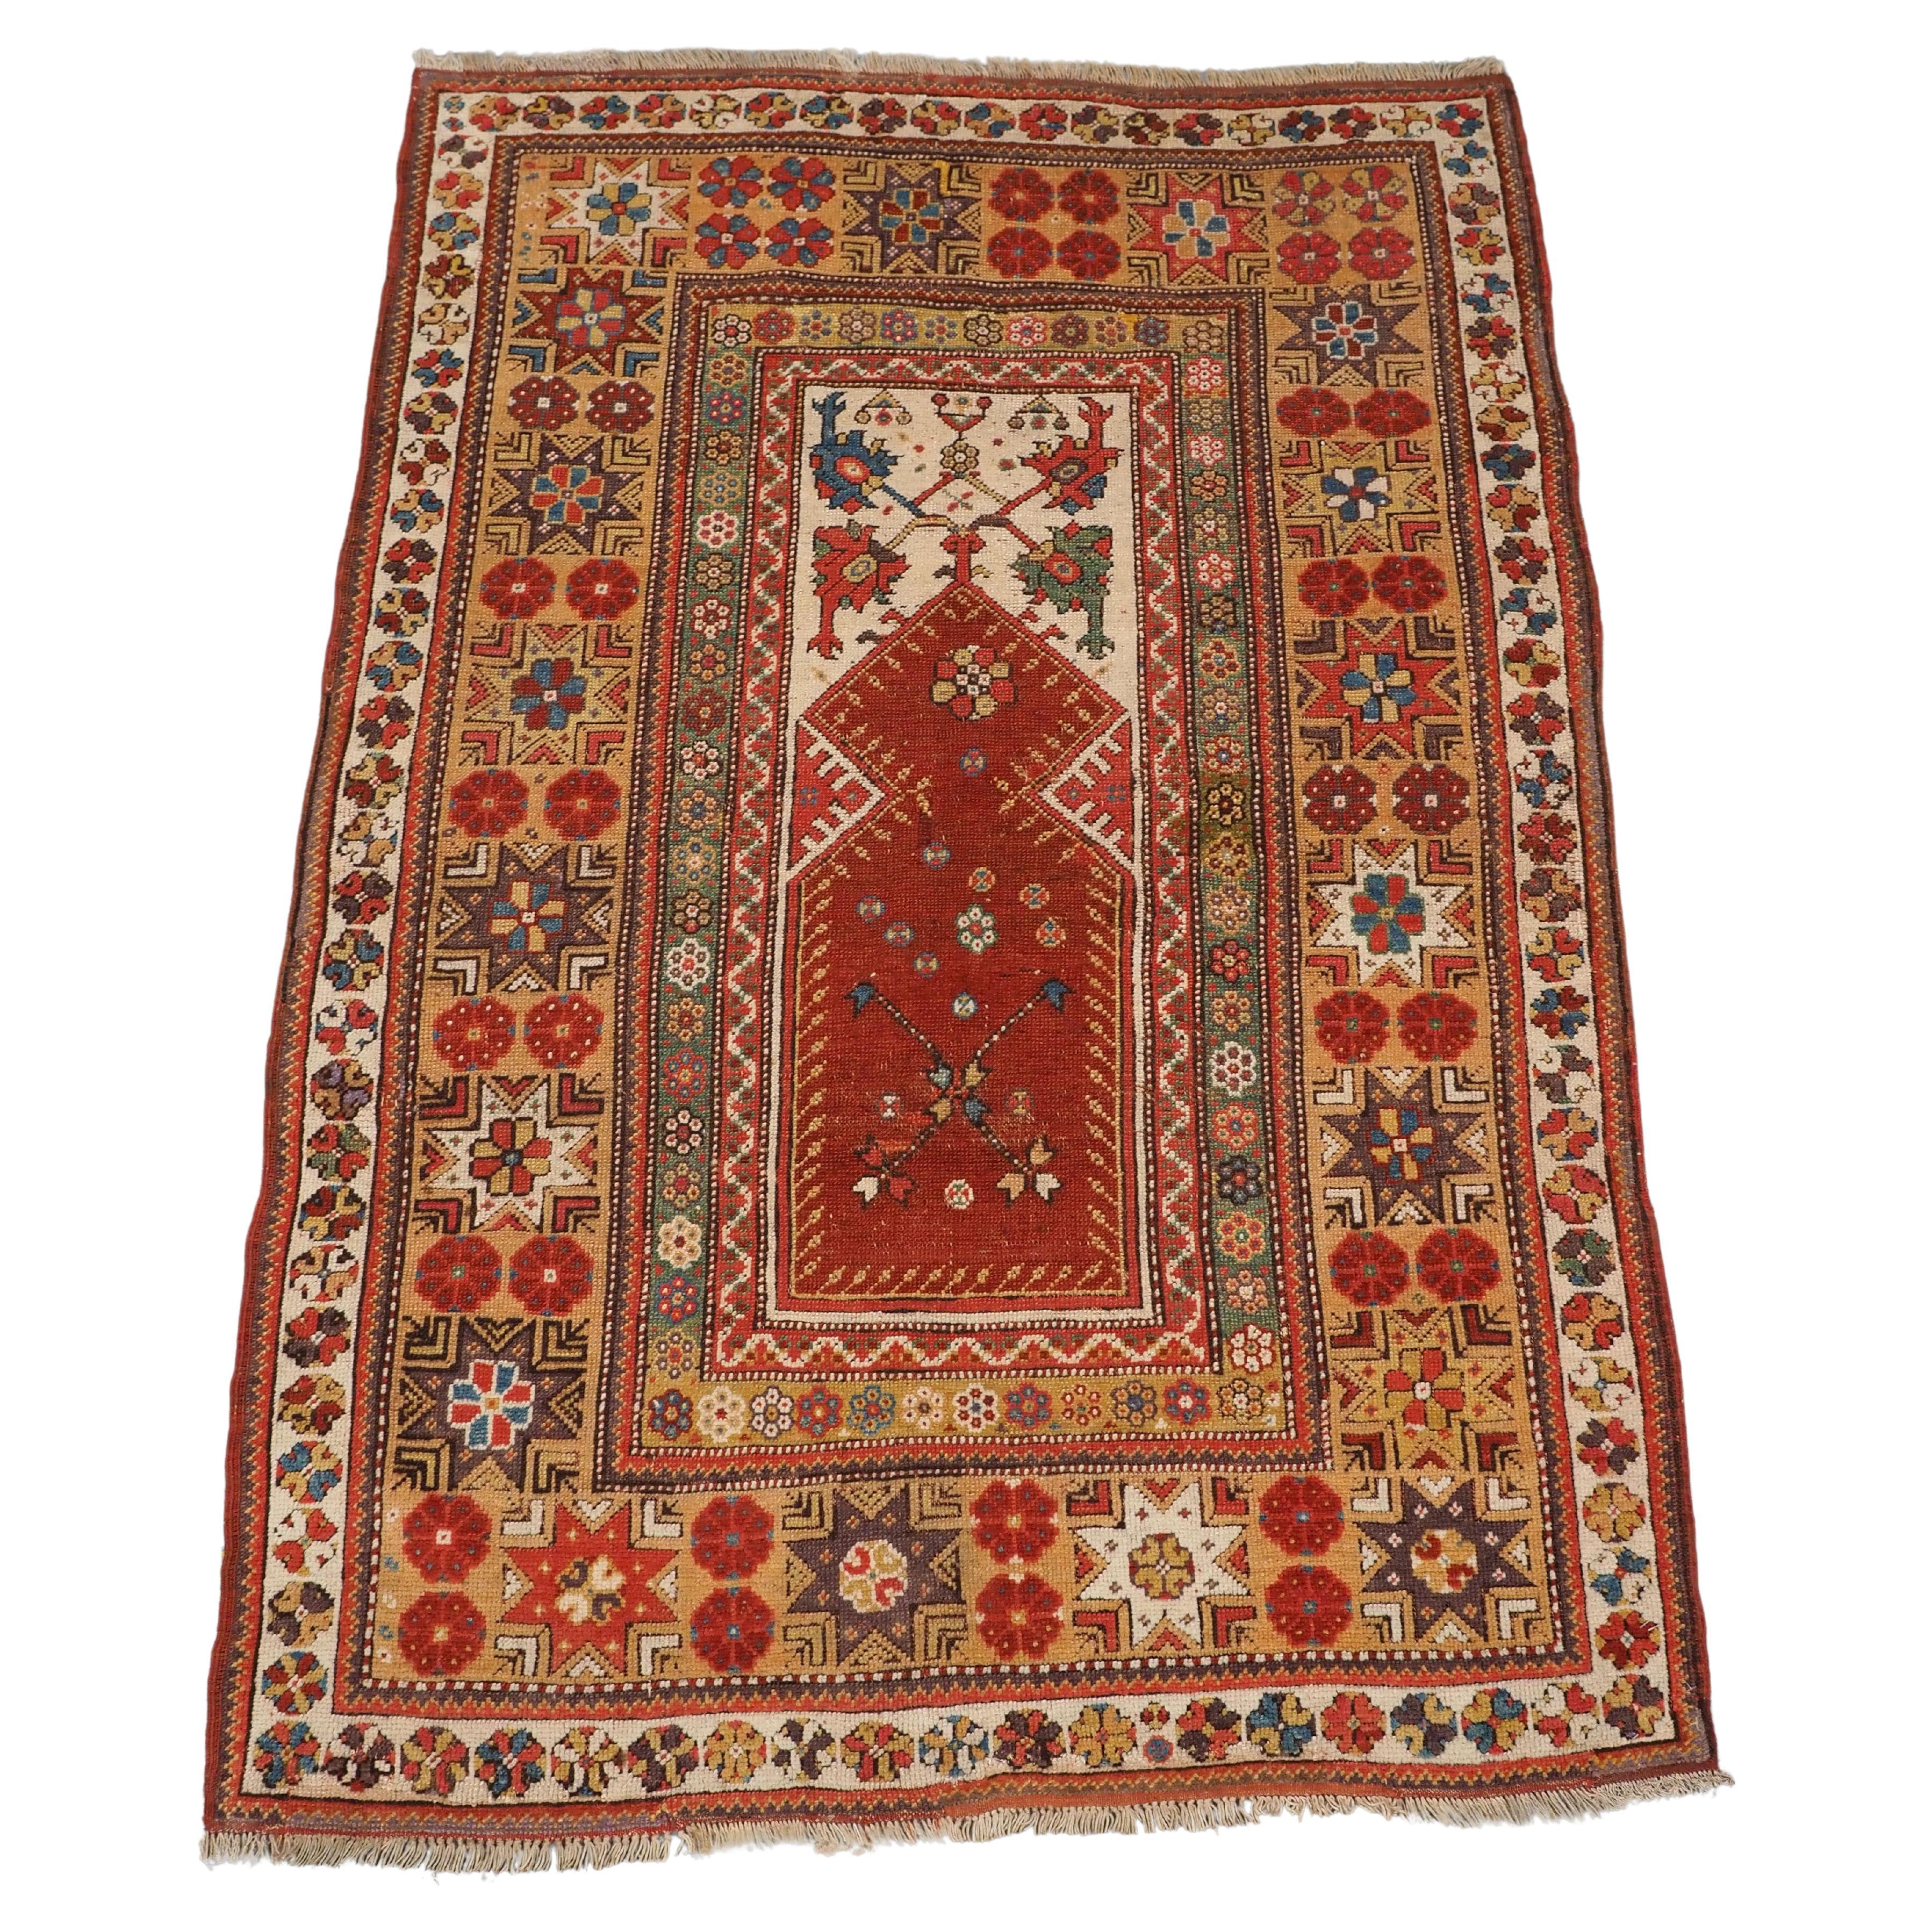 Antique Turkish Milas prayer rug of classic design, circa 1800-1825.